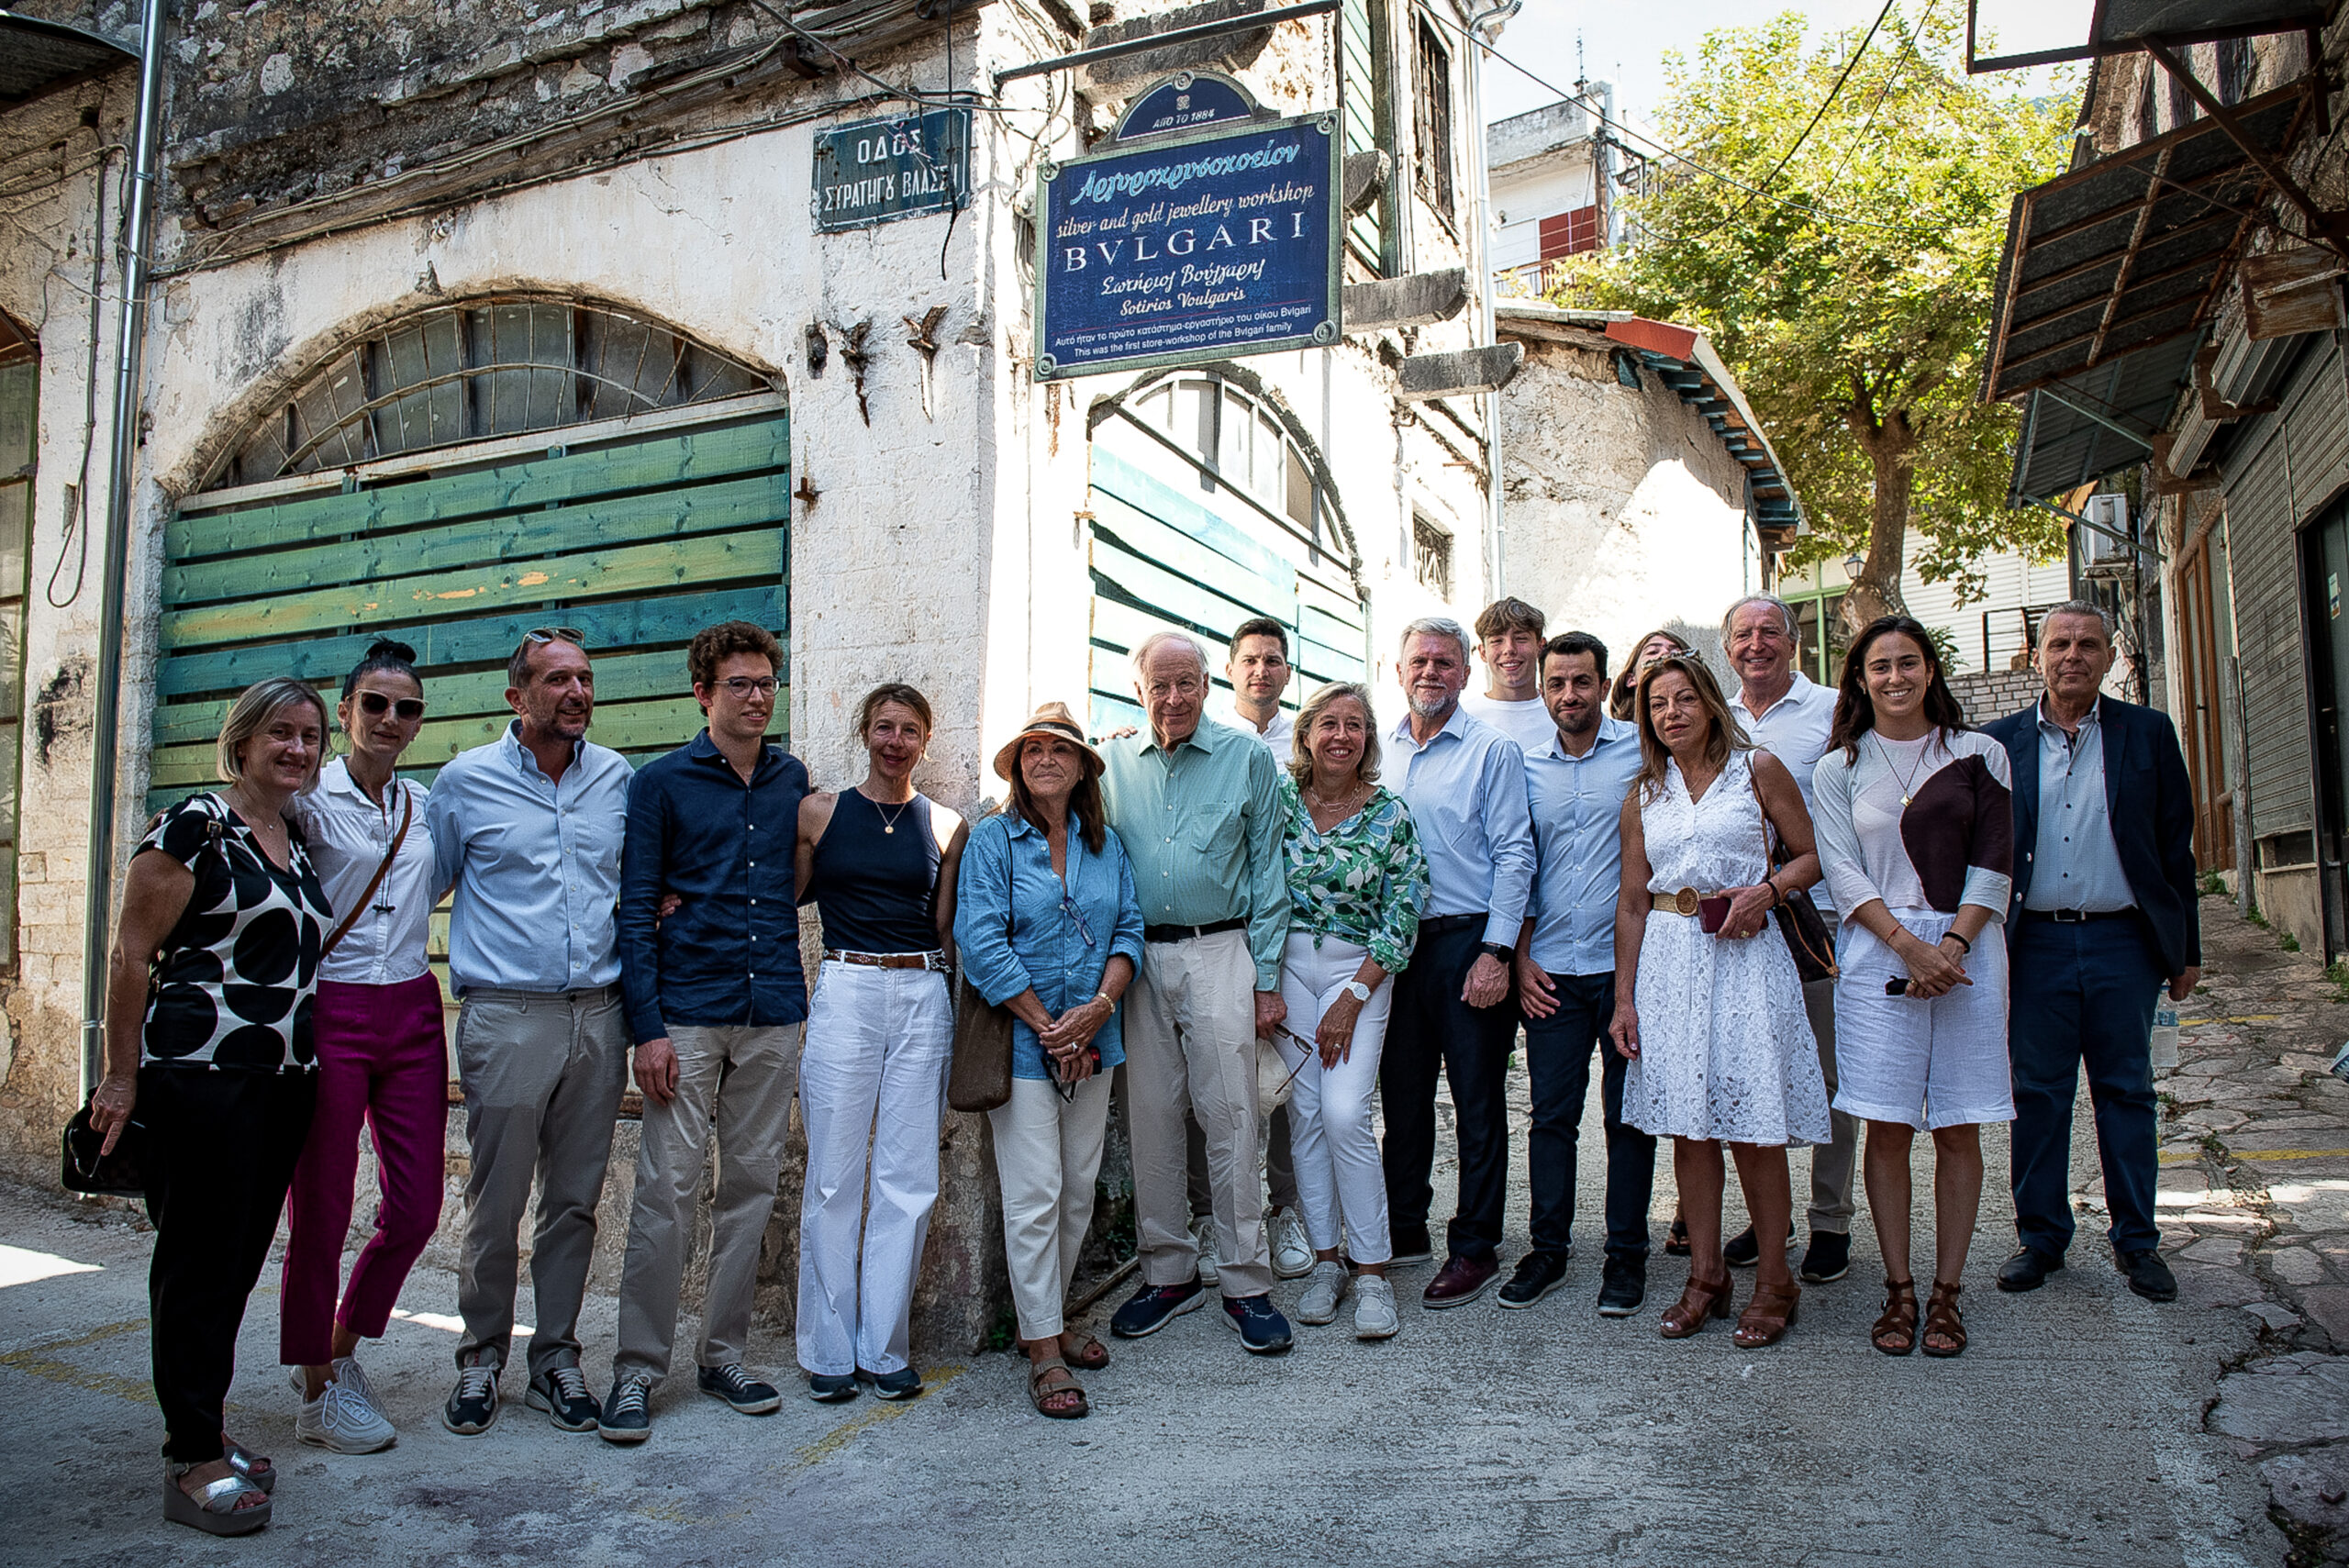 Η επίσκεψη της οικογένειας Bvlgari στην Παραμυθιά: Ένα σημαντικό ταξίδι στο παρελθόν και το μέλλον